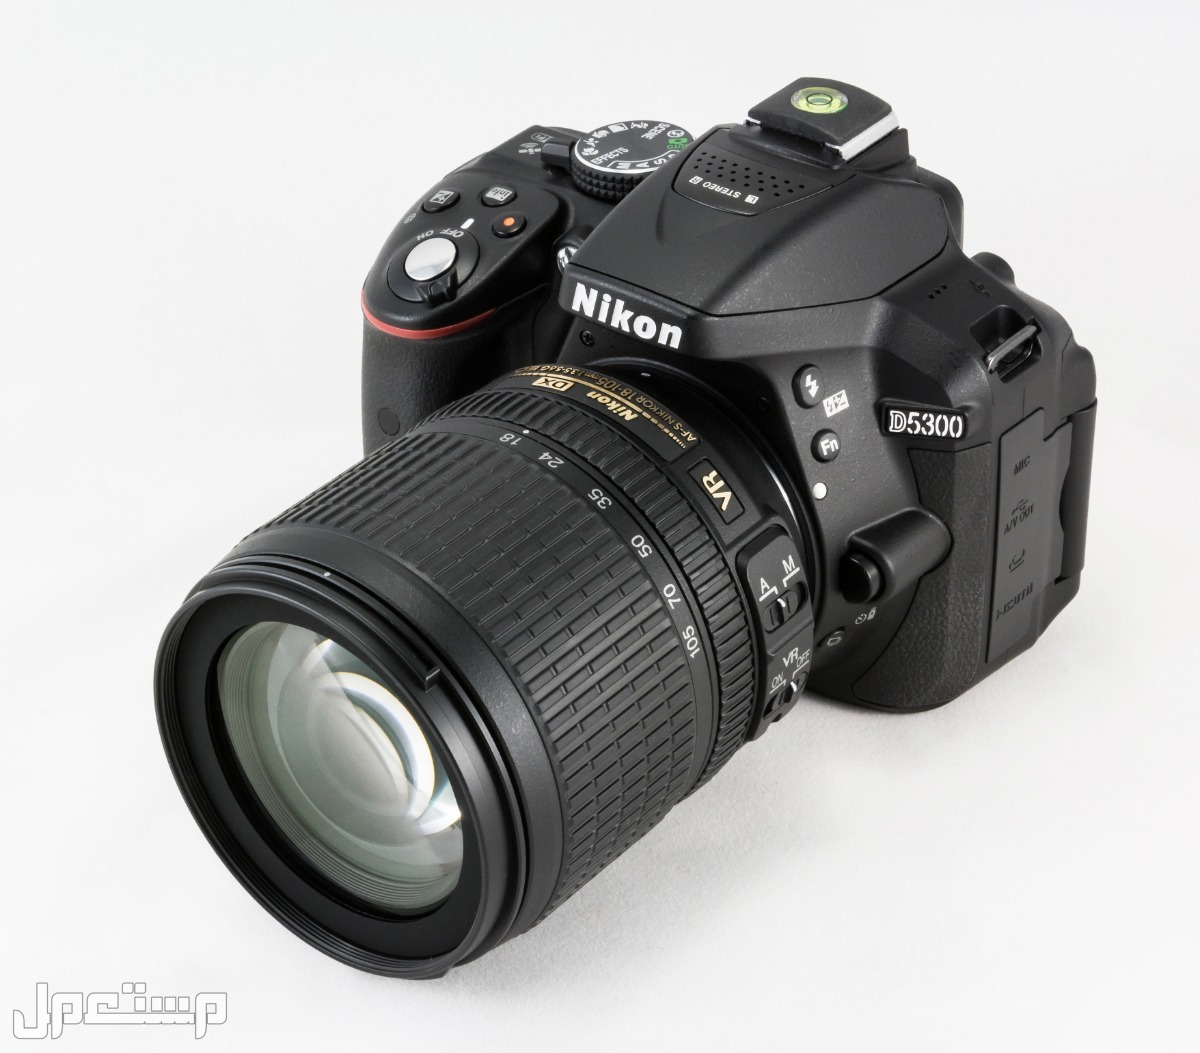 مواصفات ومميزات وأسعار أفضل أنواع كاميرات نيكون للمحترفين في قطر كاميرا Nikon D5300